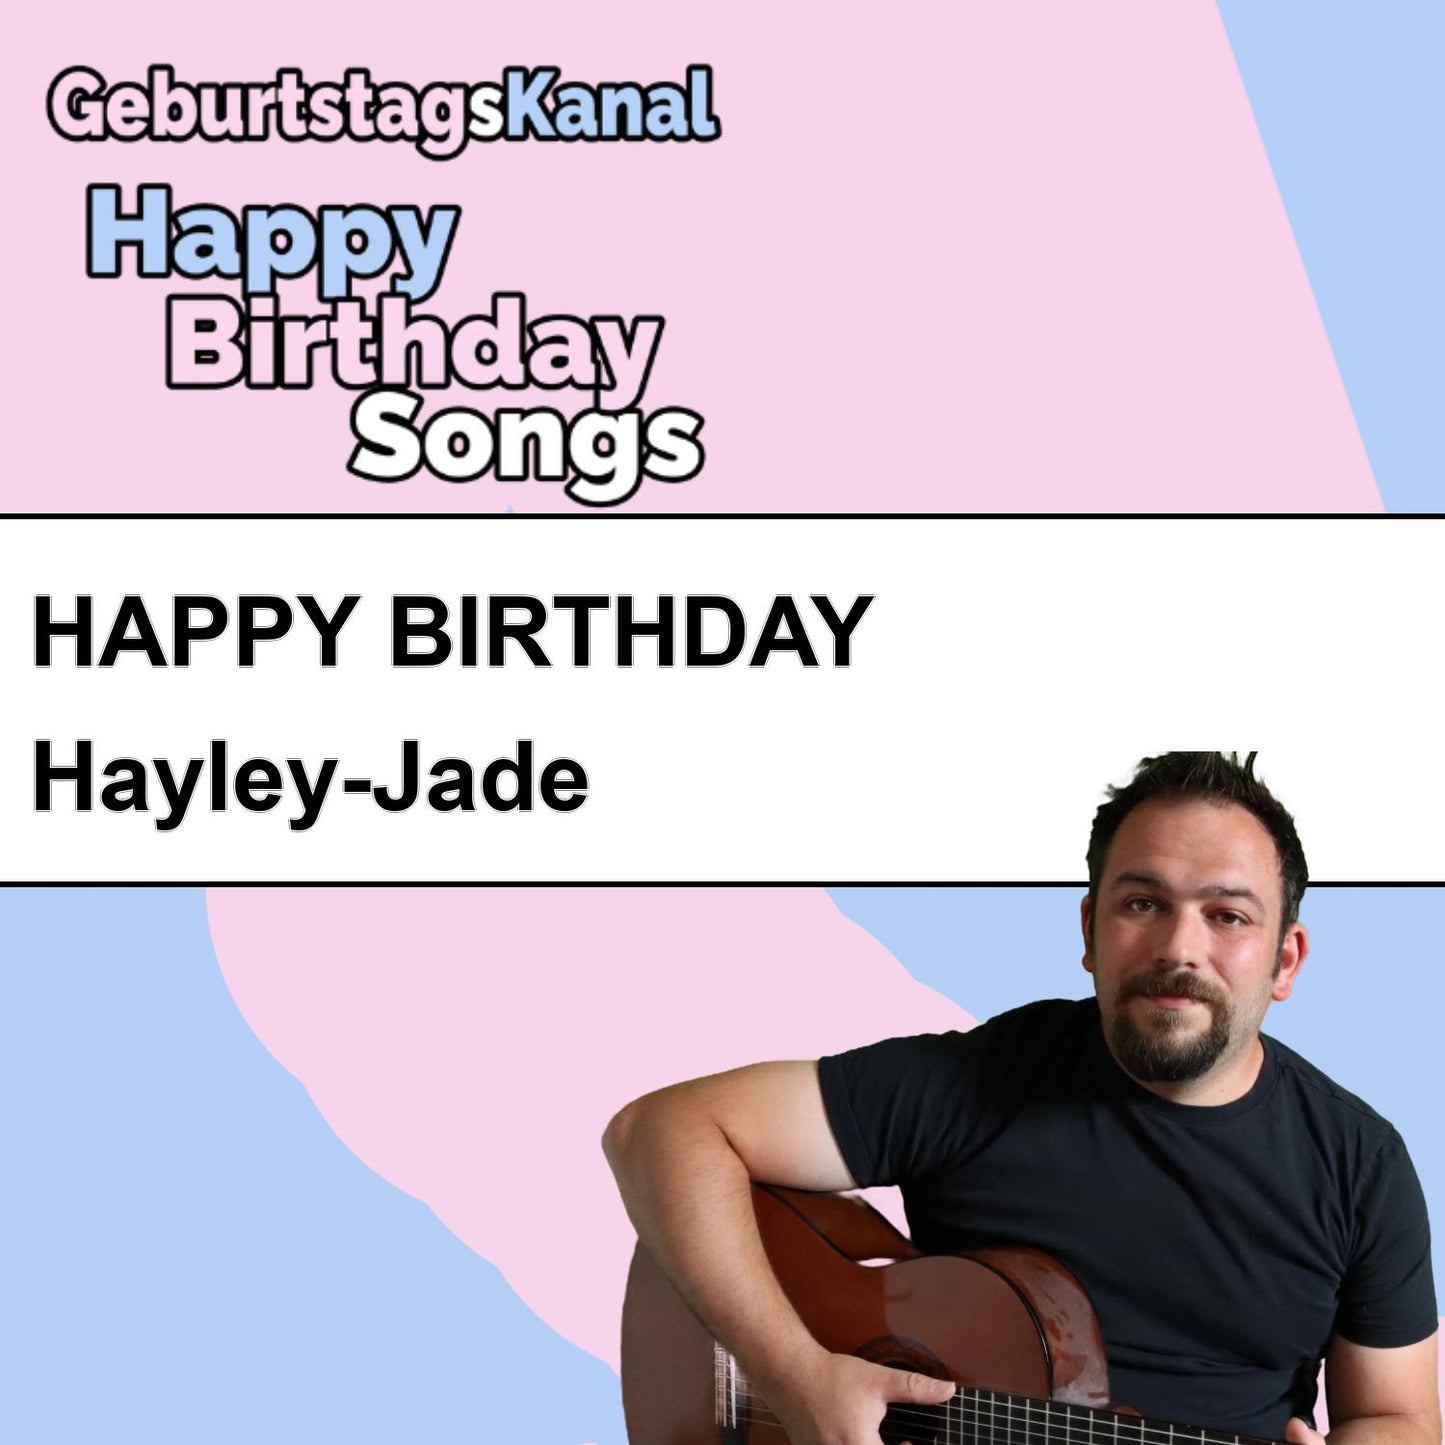 Produktbild Happy Birthday to you Hayley-Jade mit Wunschgrußbotschaft